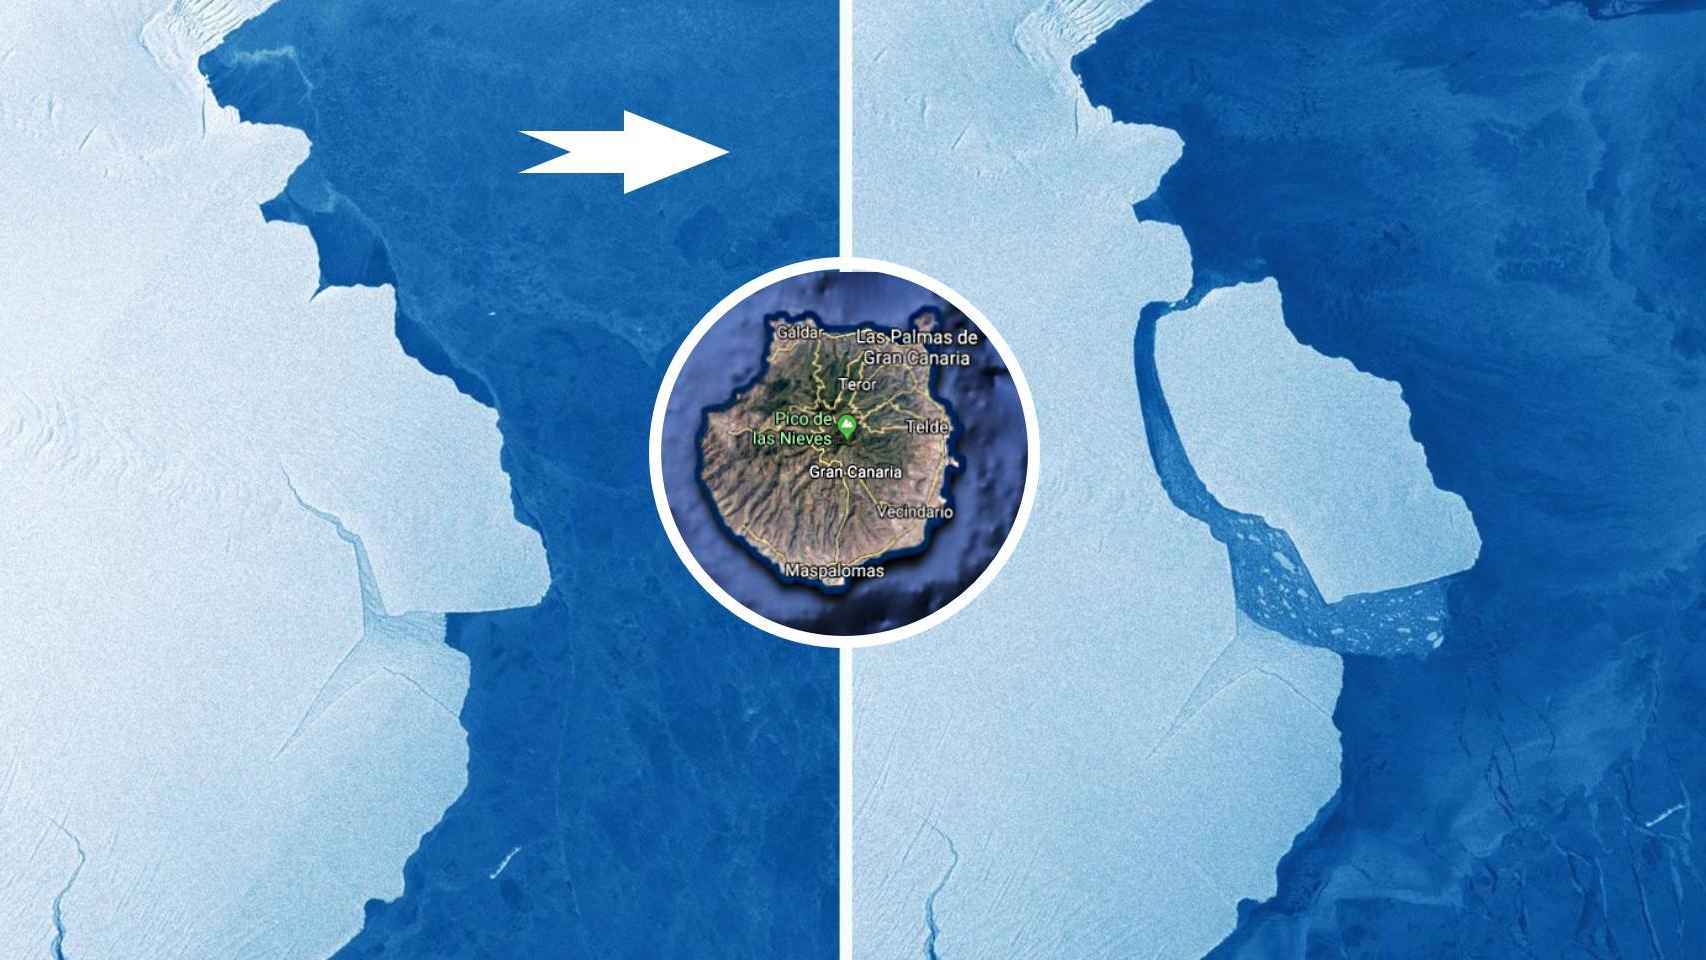 Imágenes del desprendimiento del iceberg con la isla de Gran Canaria como comparativa.